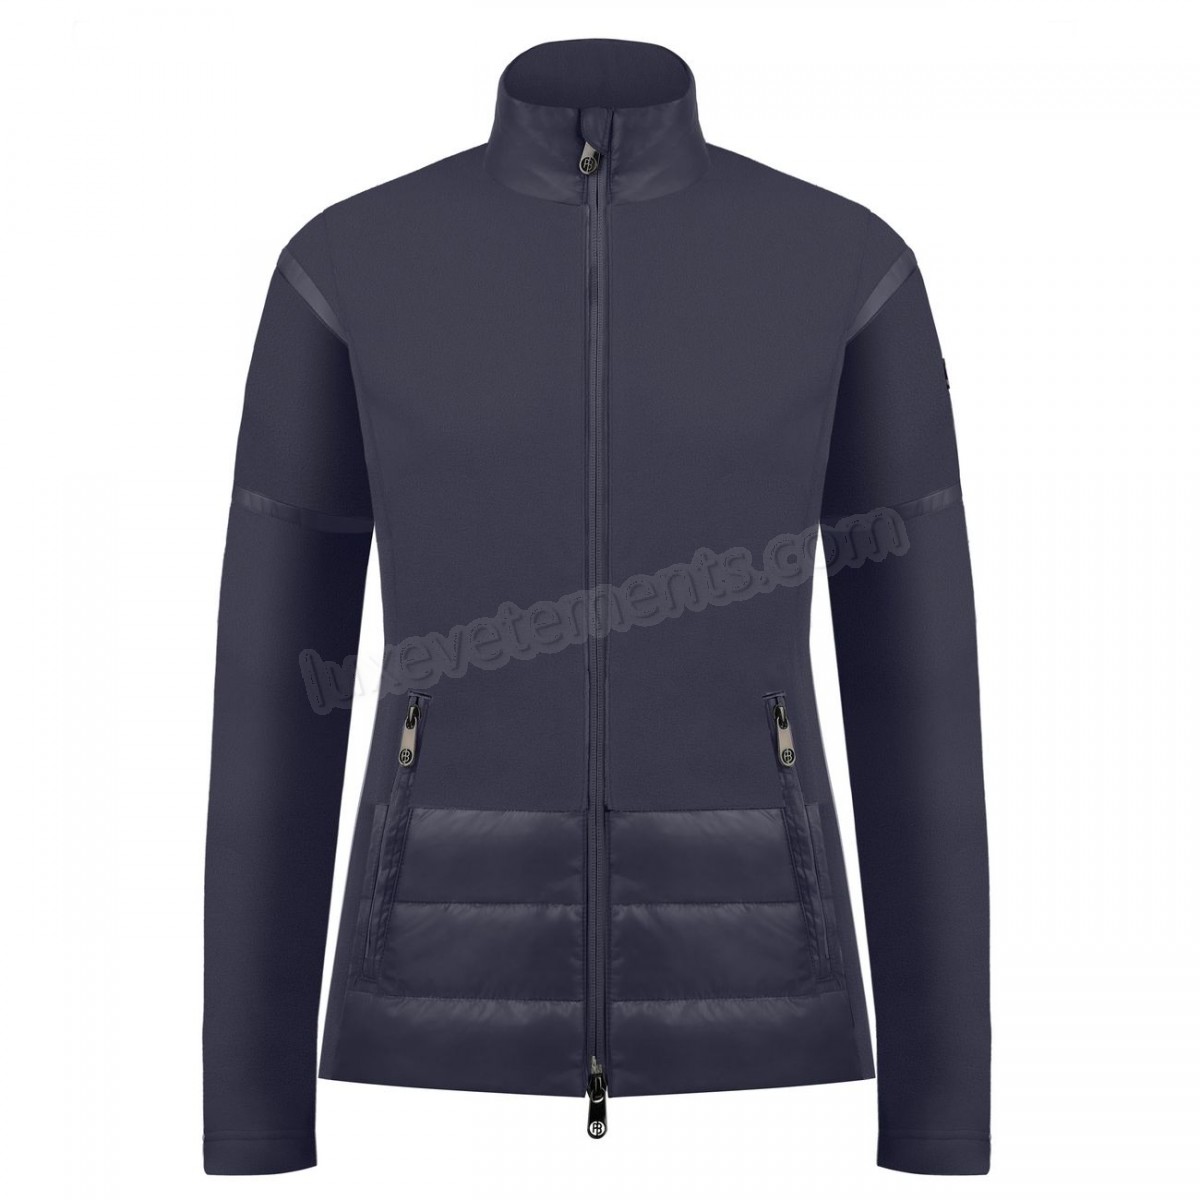 Poivre Blanc-Sports d'hiver femme POIVRE BLANC Veste Polaire Poivre Blanc Hybrid Fleece Jacket 1601 Gothic Blue 4 Femme Vente en ligne - -2